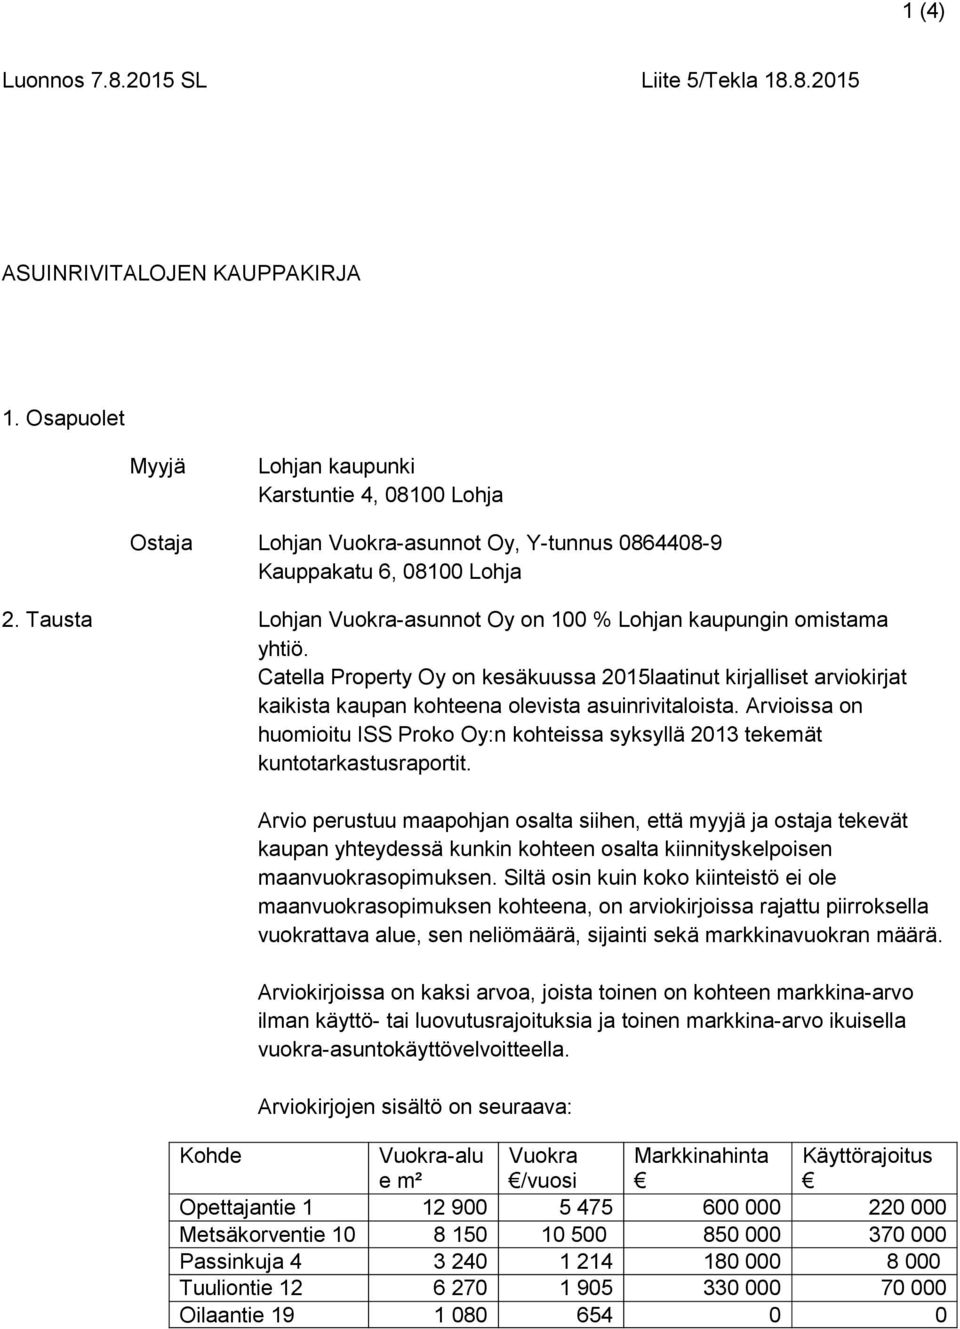 Tausta Lohjan Vuokra-asunnot Oy on 100 % Lohjan kaupungin omistama yhtiö. Catella Property Oy on kesäkuussa 2015laatinut kirjalliset arviokirjat kaikista kaupan kohteena olevista asuinrivitaloista.